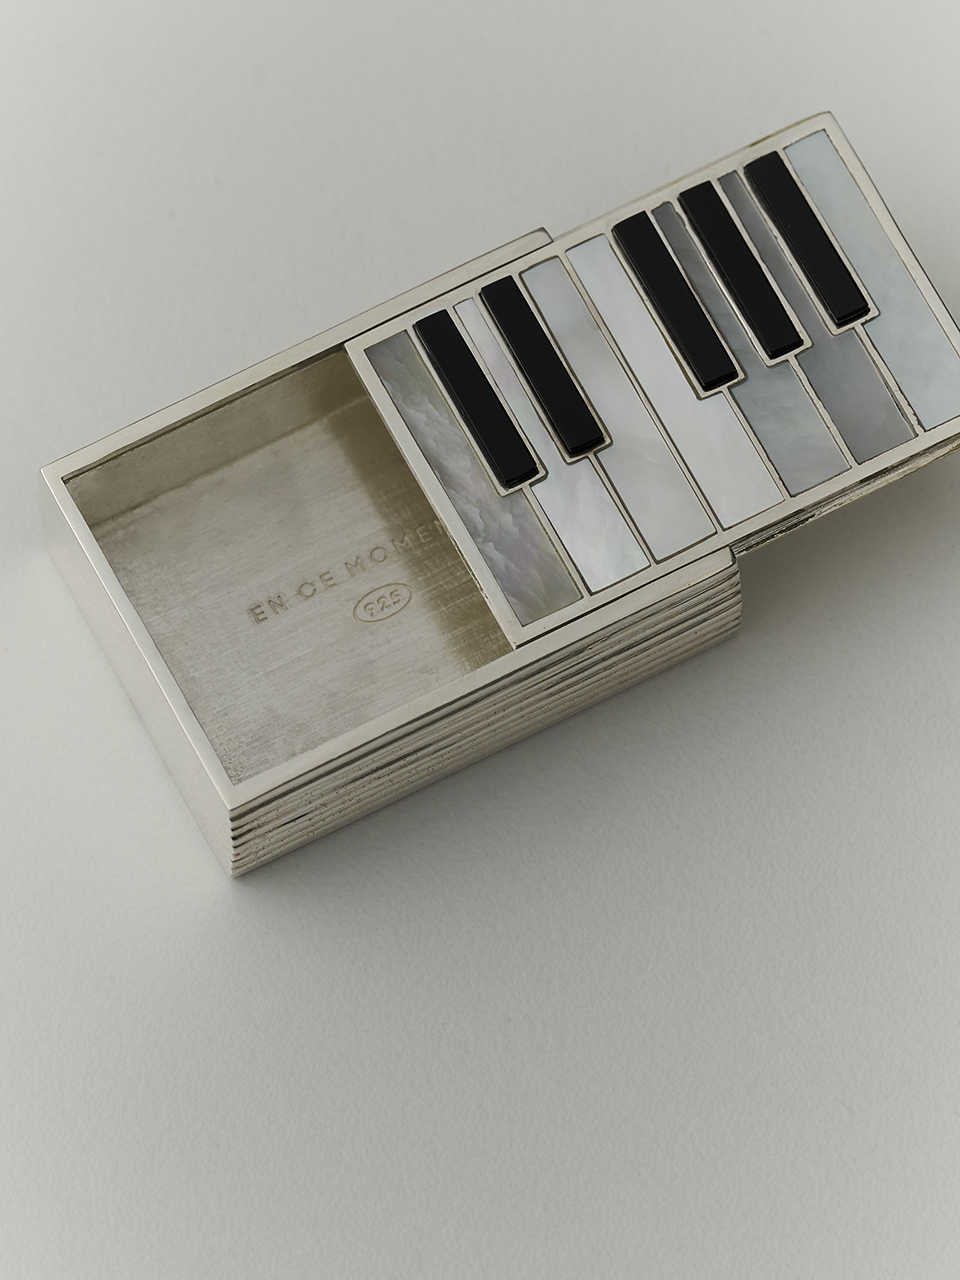 음악과 추억을 담은 공간: 앙스모멍의 피아노 케이스